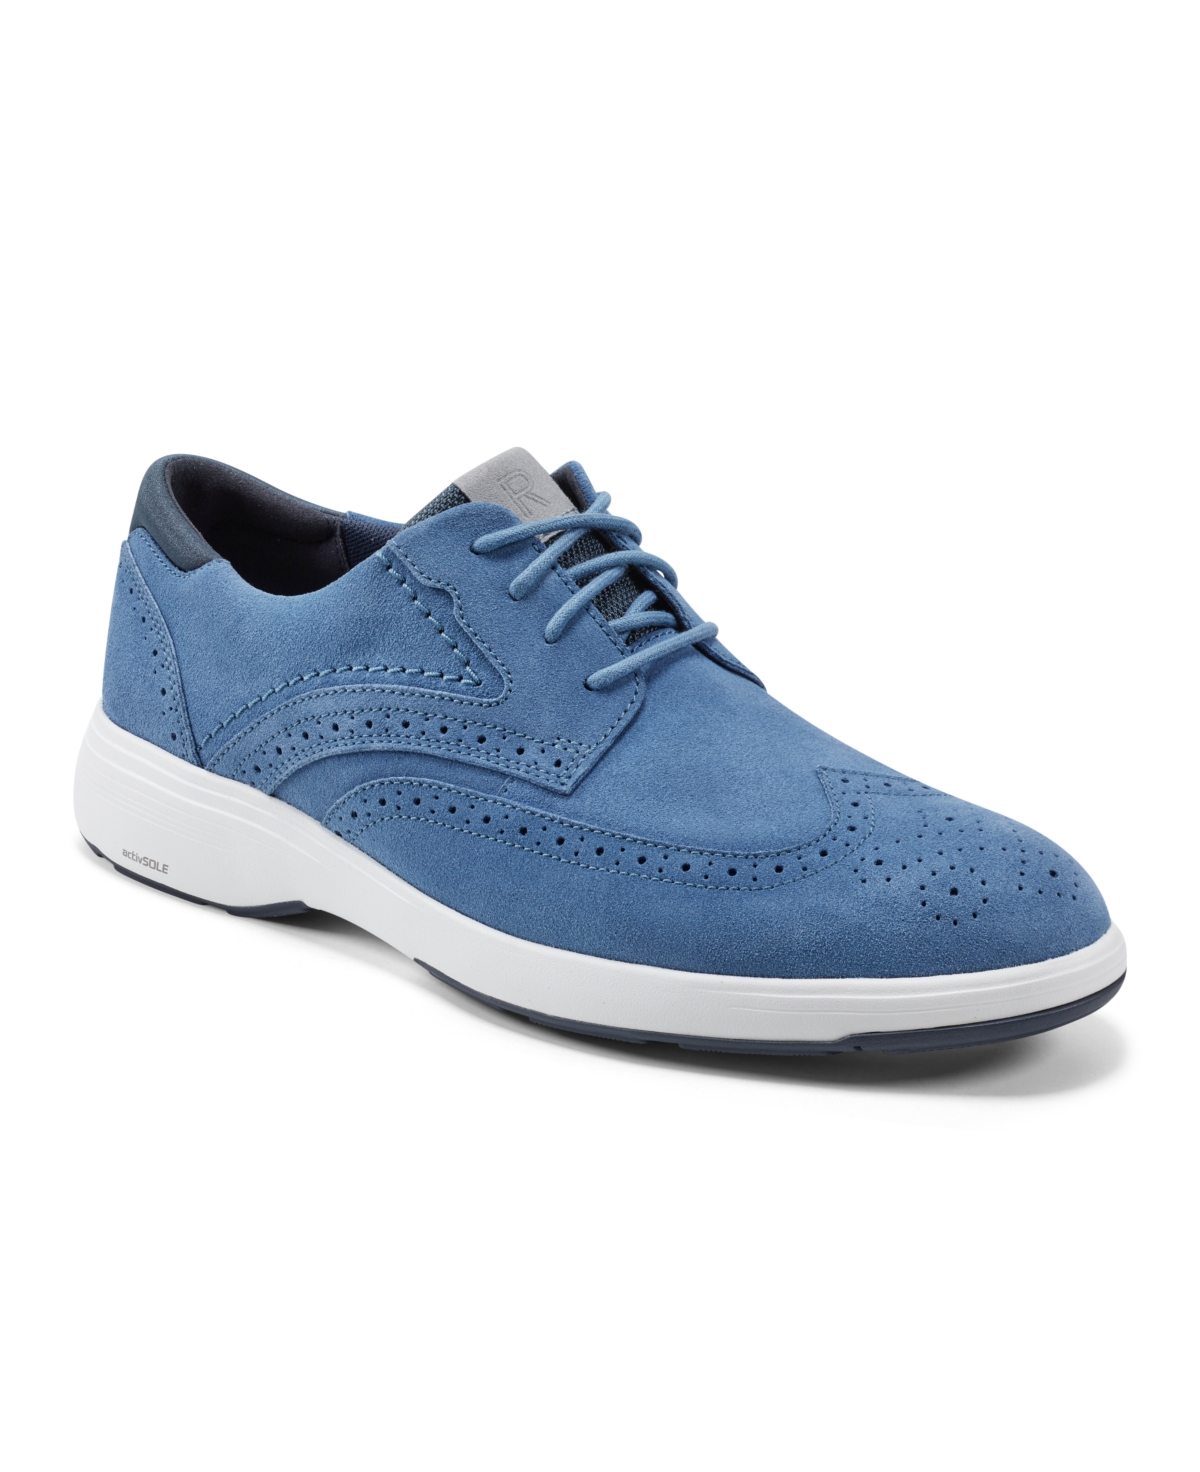 Men's Noah Wingtip Shoes - Light Blue